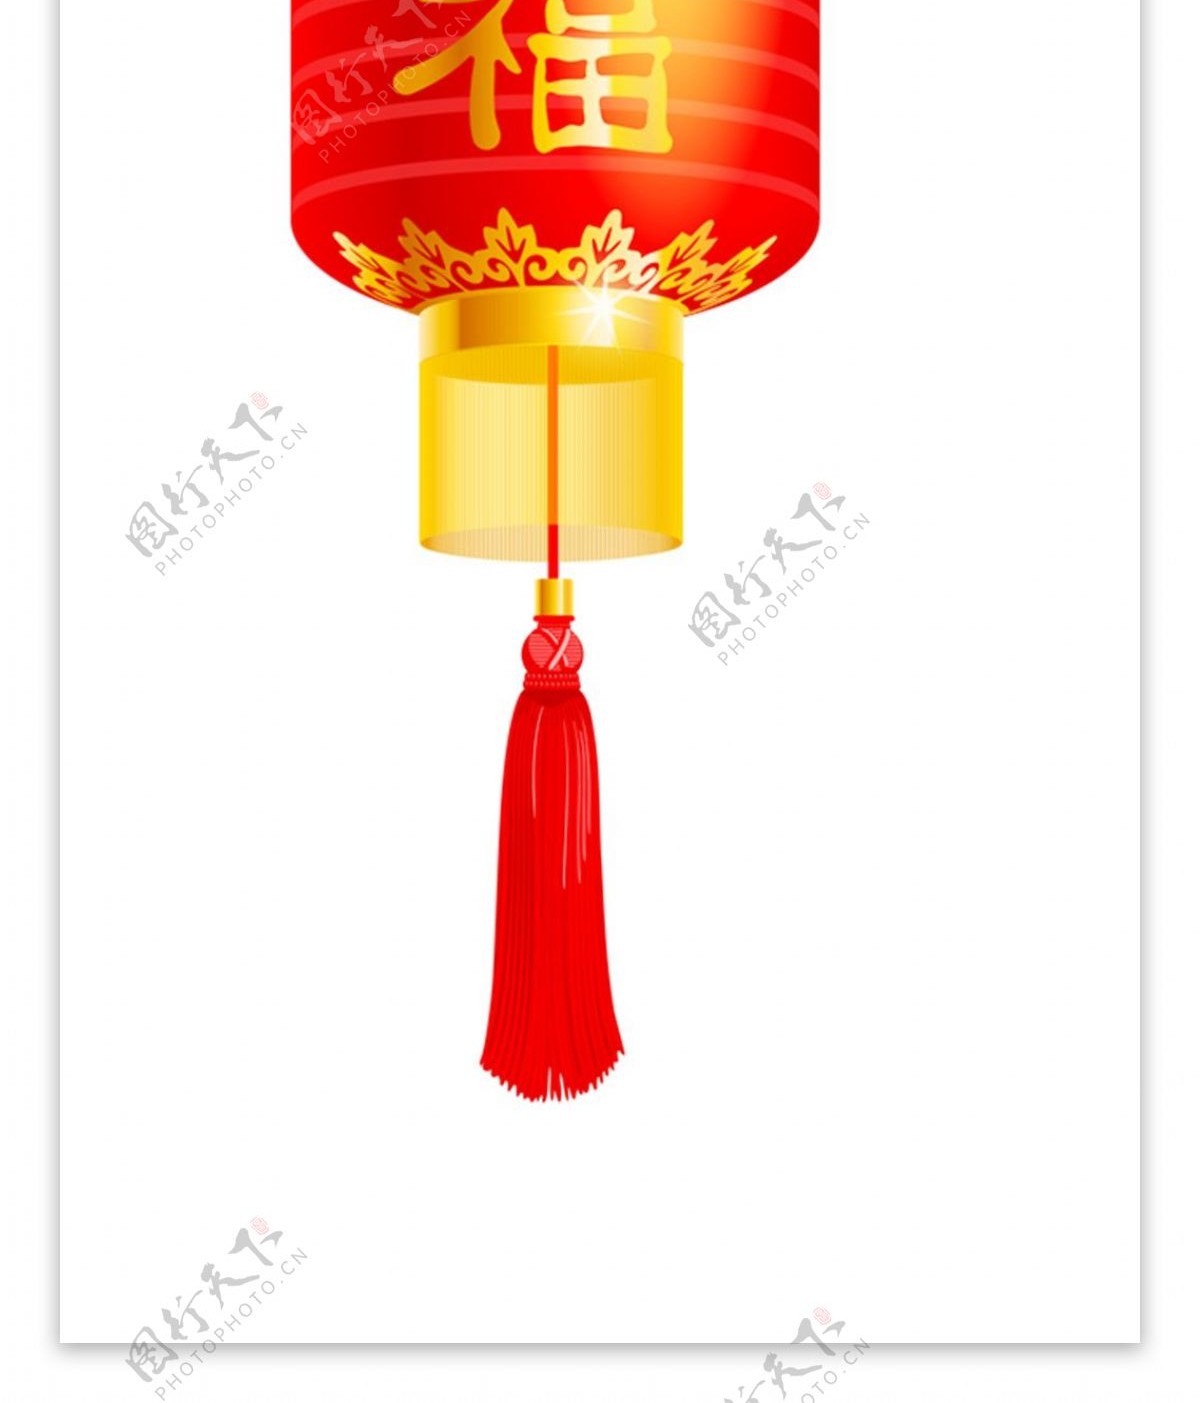 中国风新年花纹福字灯元素